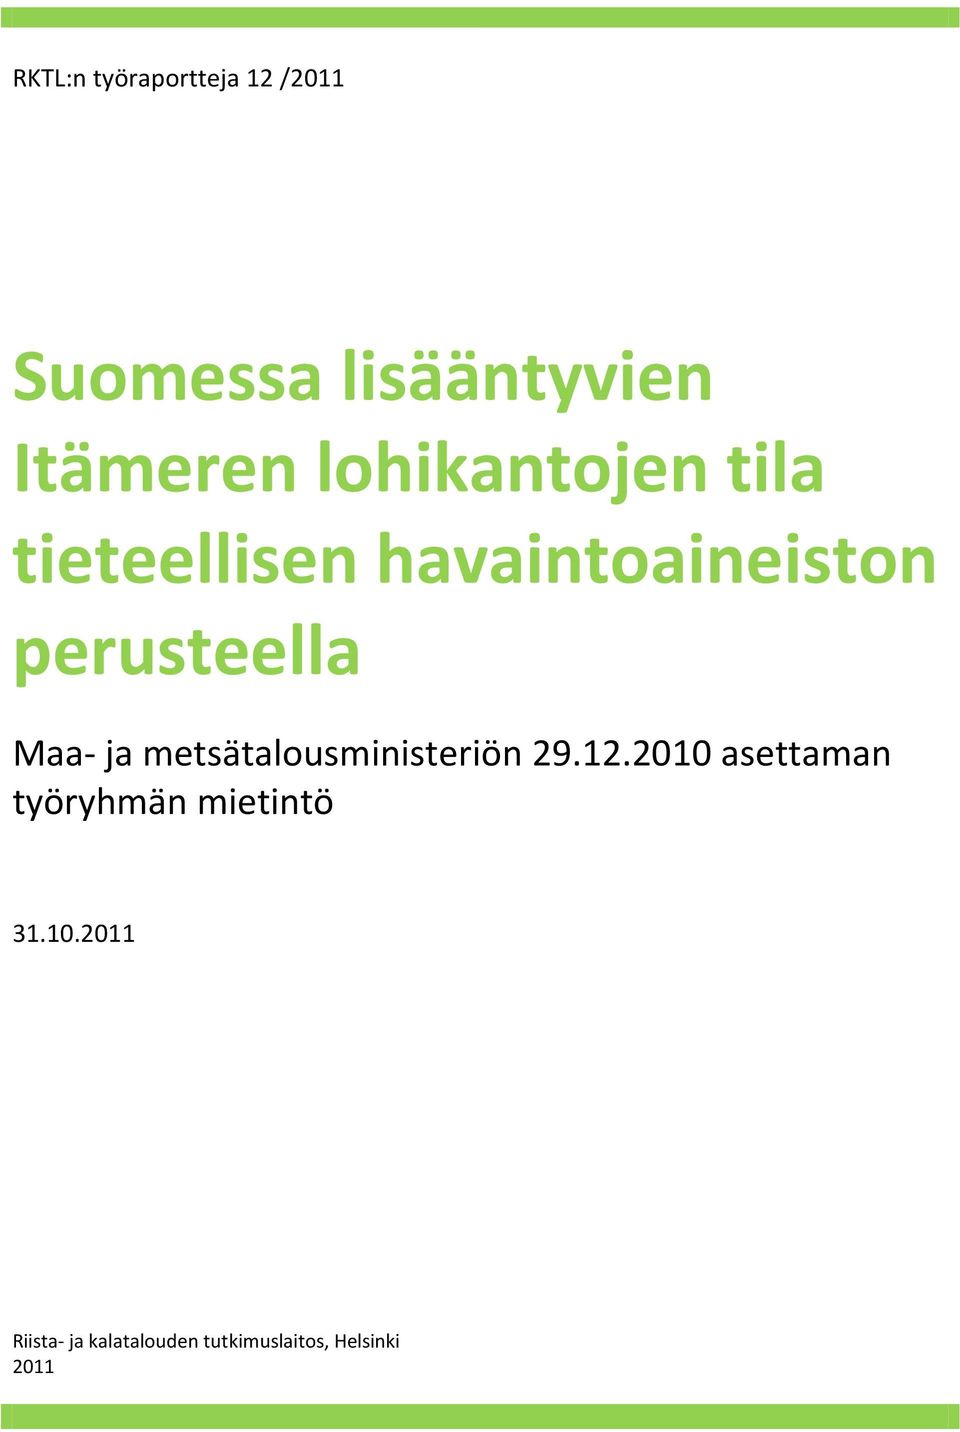 Maa- ja metsätalousministeriön 29.12.